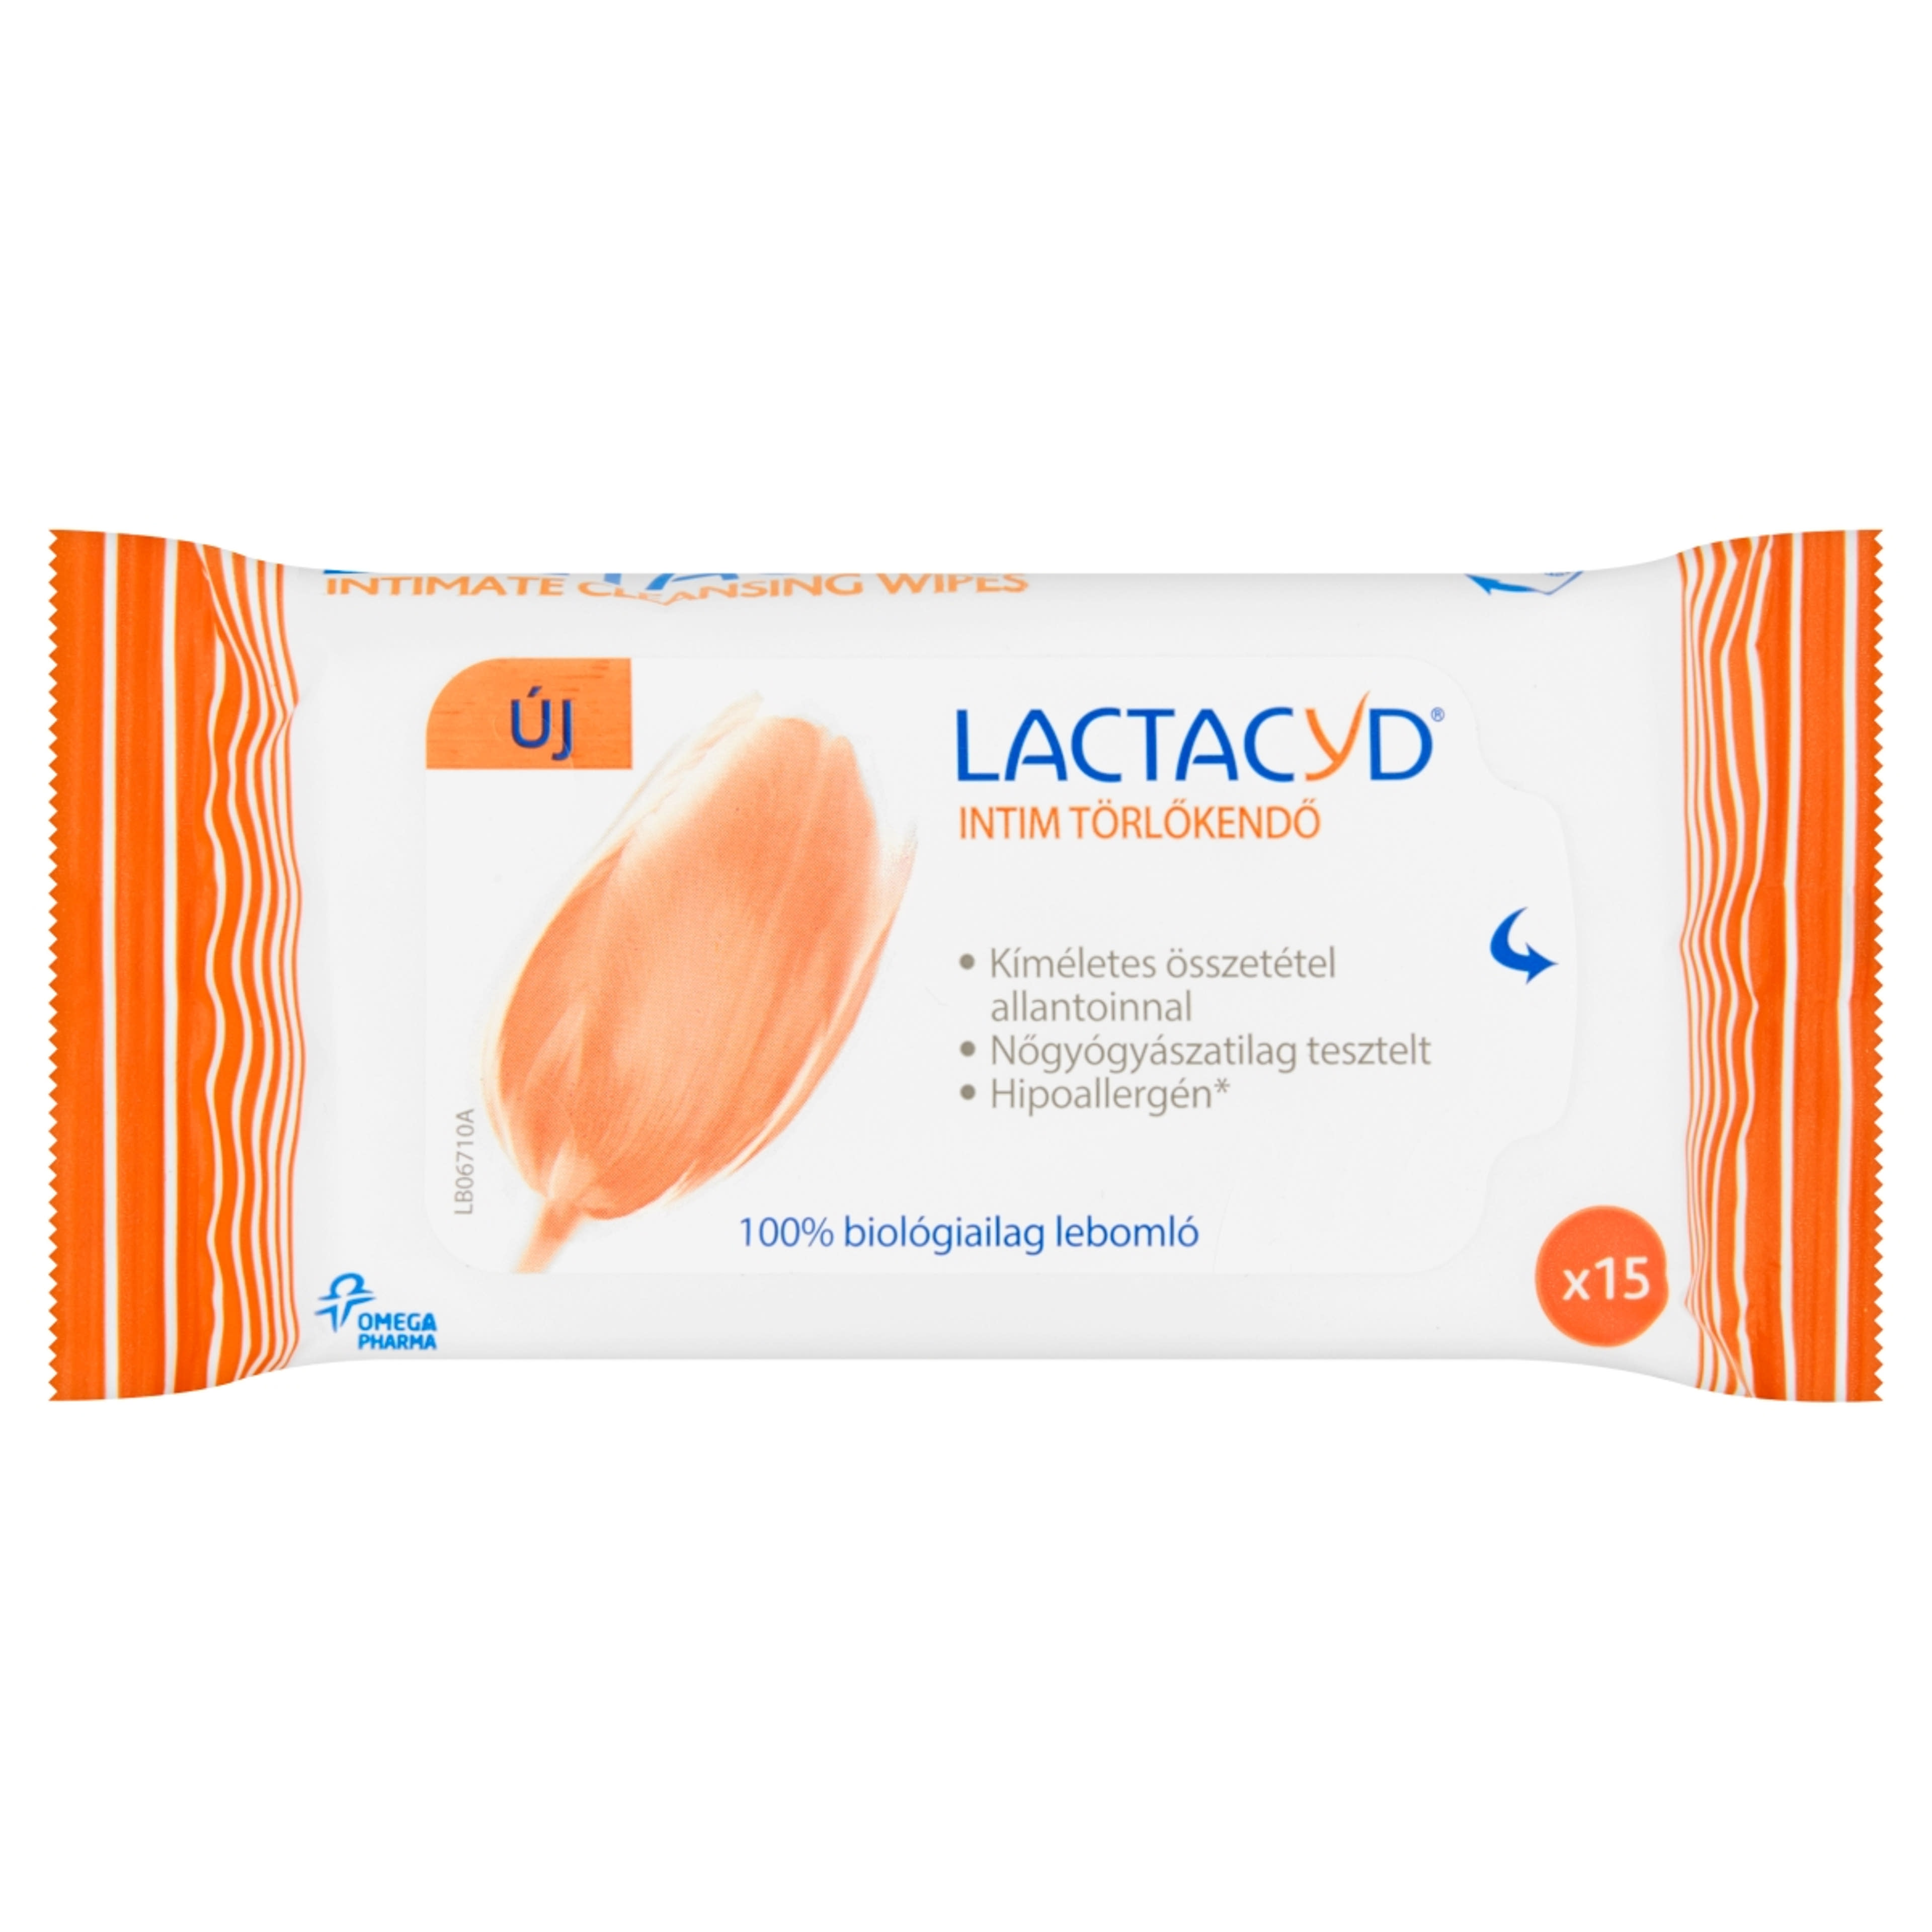 Lactacyd intim törlőkendő - 15 db-1